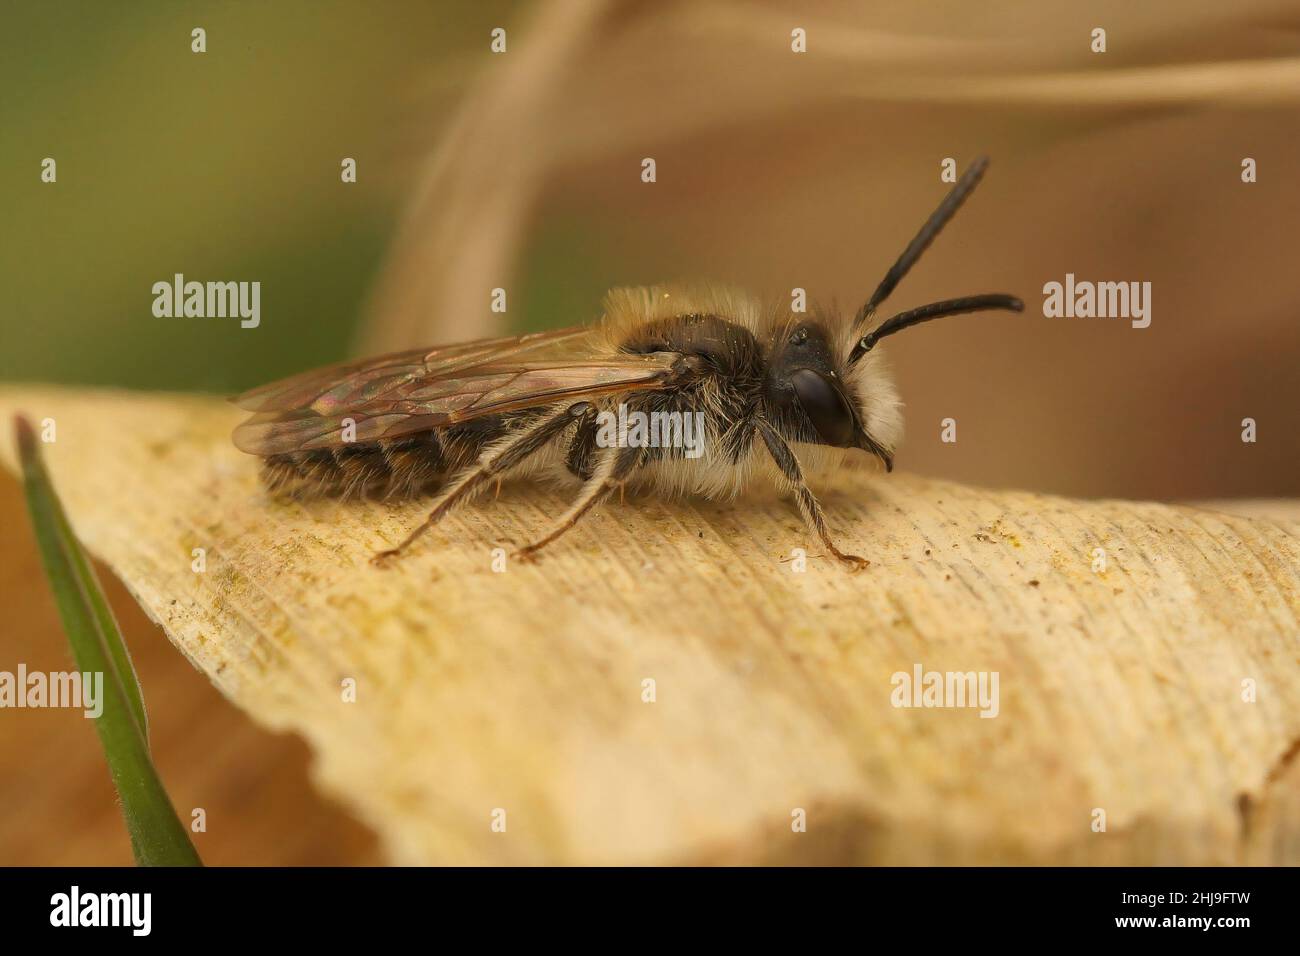 Nahaufnahme der Bergbaubiene eines männlichen Clarks, Andrena clarkella auf einem getrockneten Blatt Stockfoto